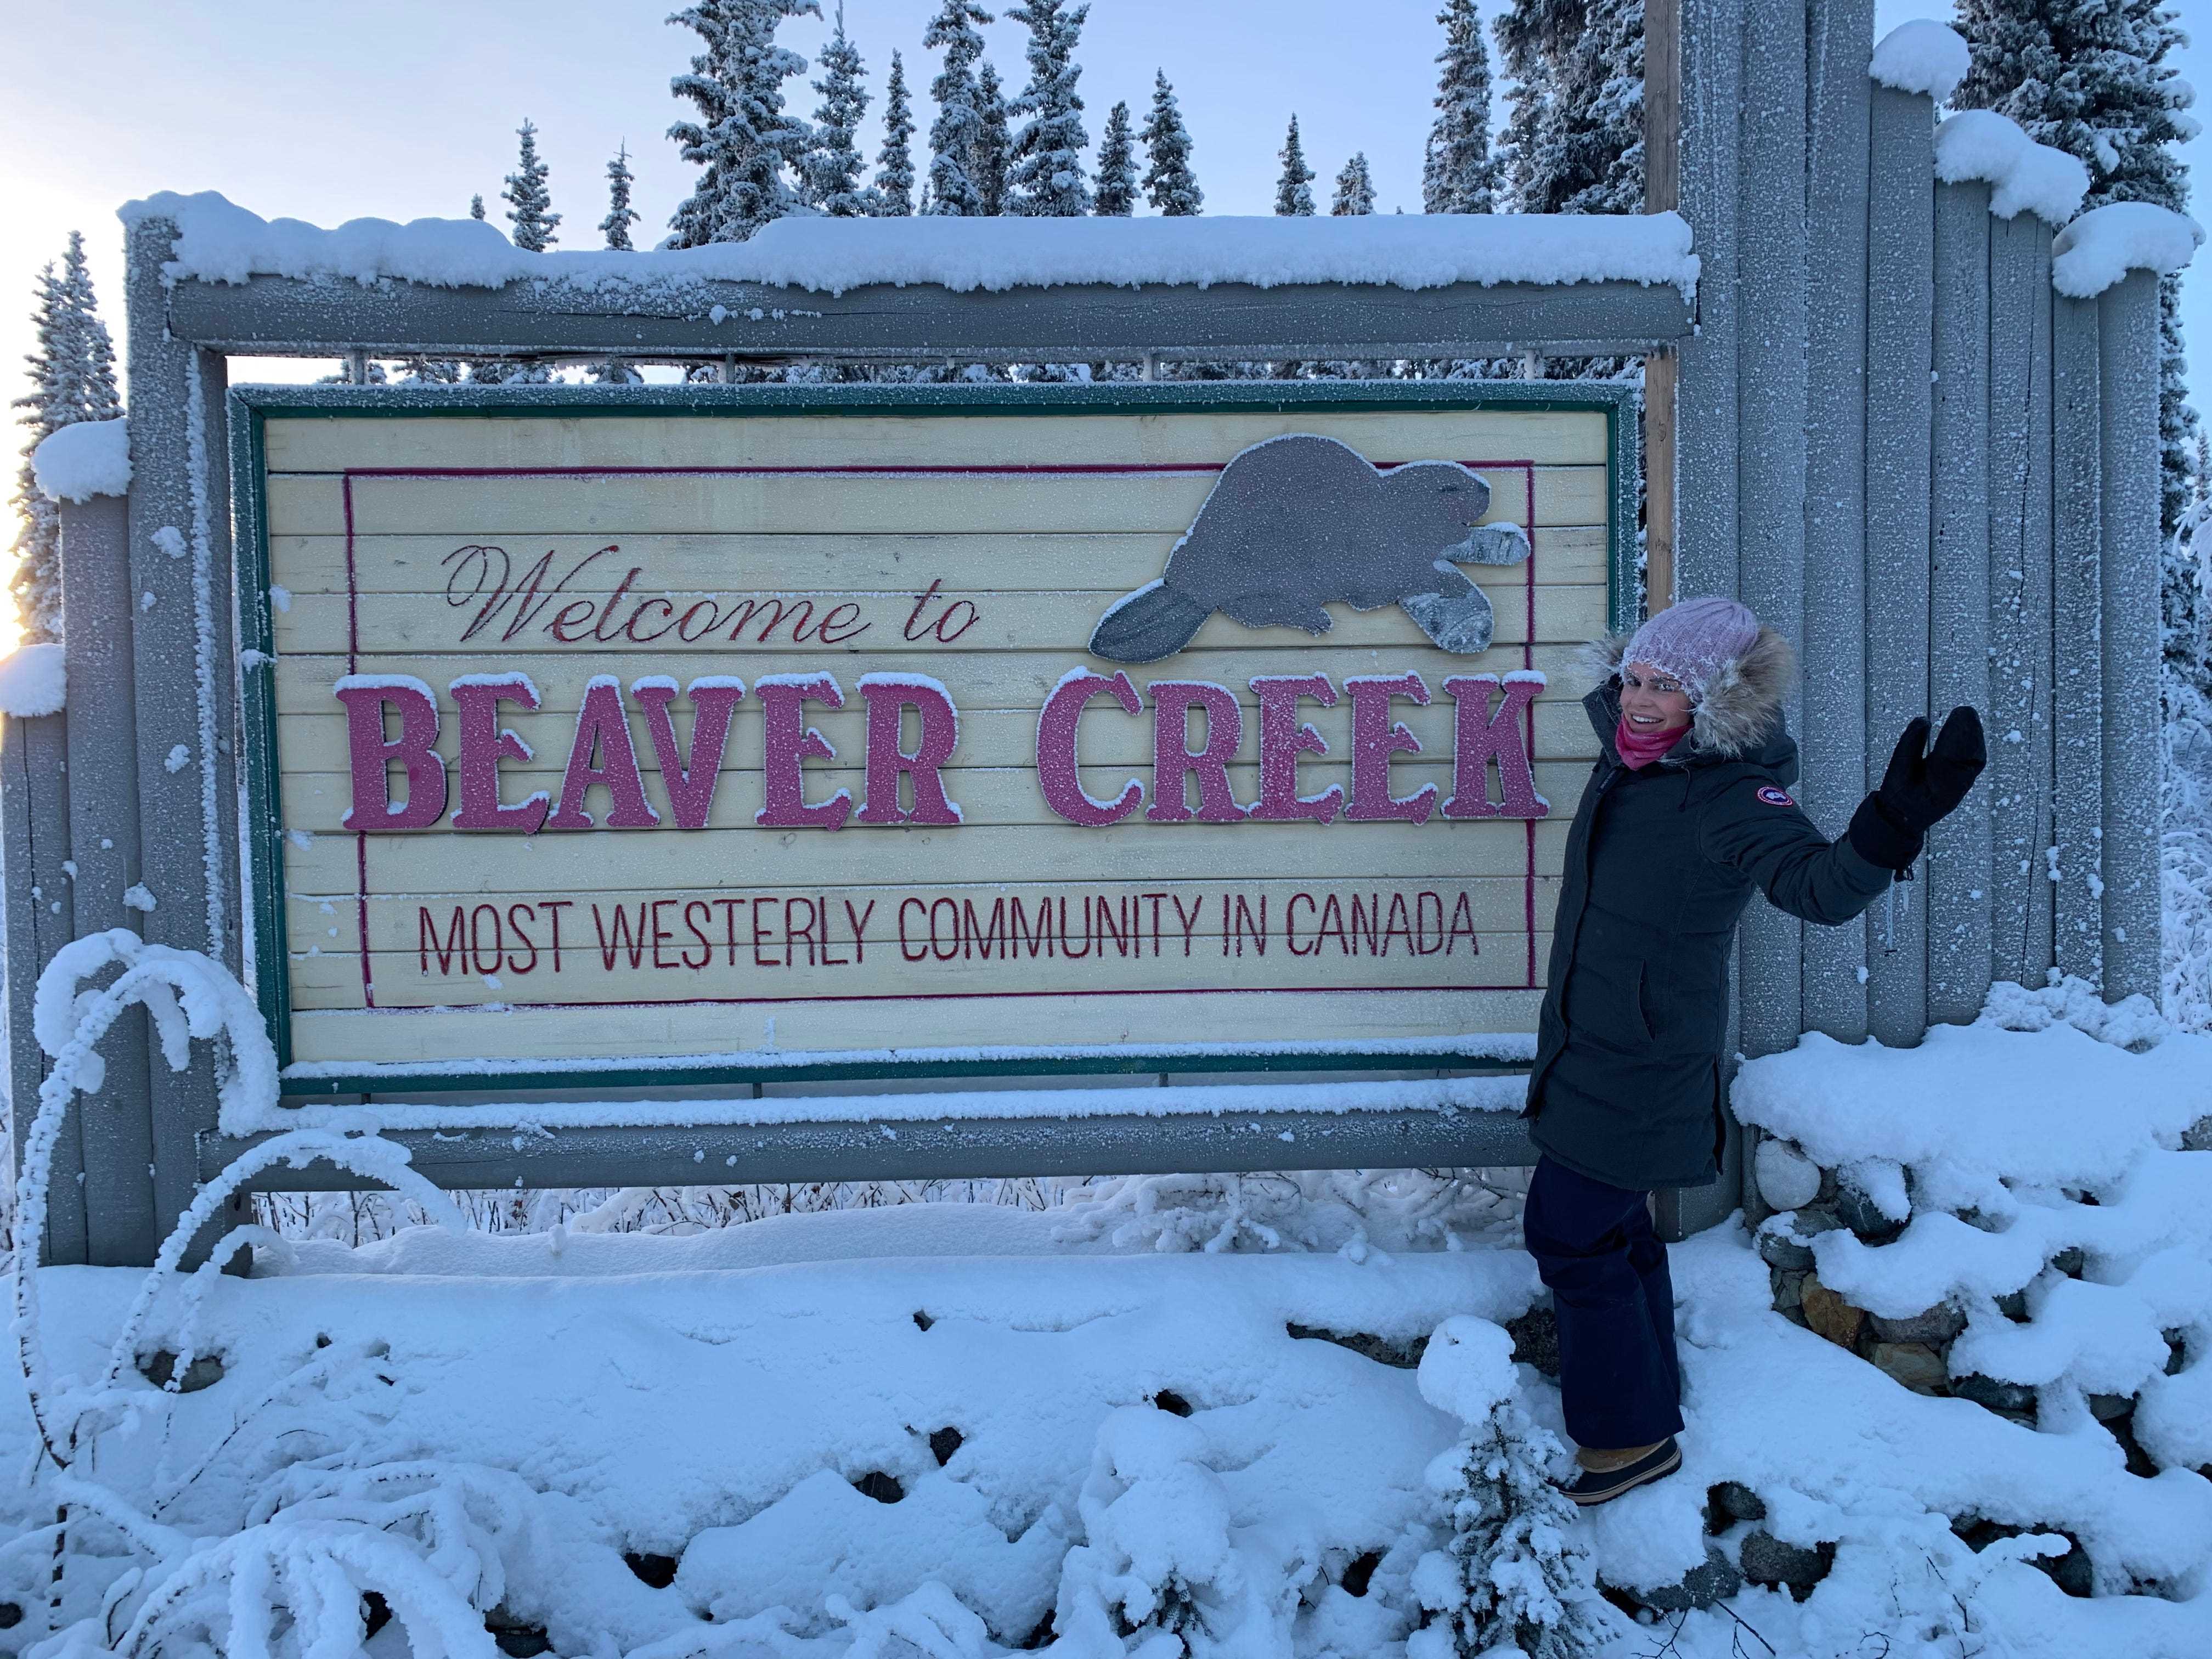 Hilary steht neben dem Welcome to Beaver Creek-Schild im Schnee